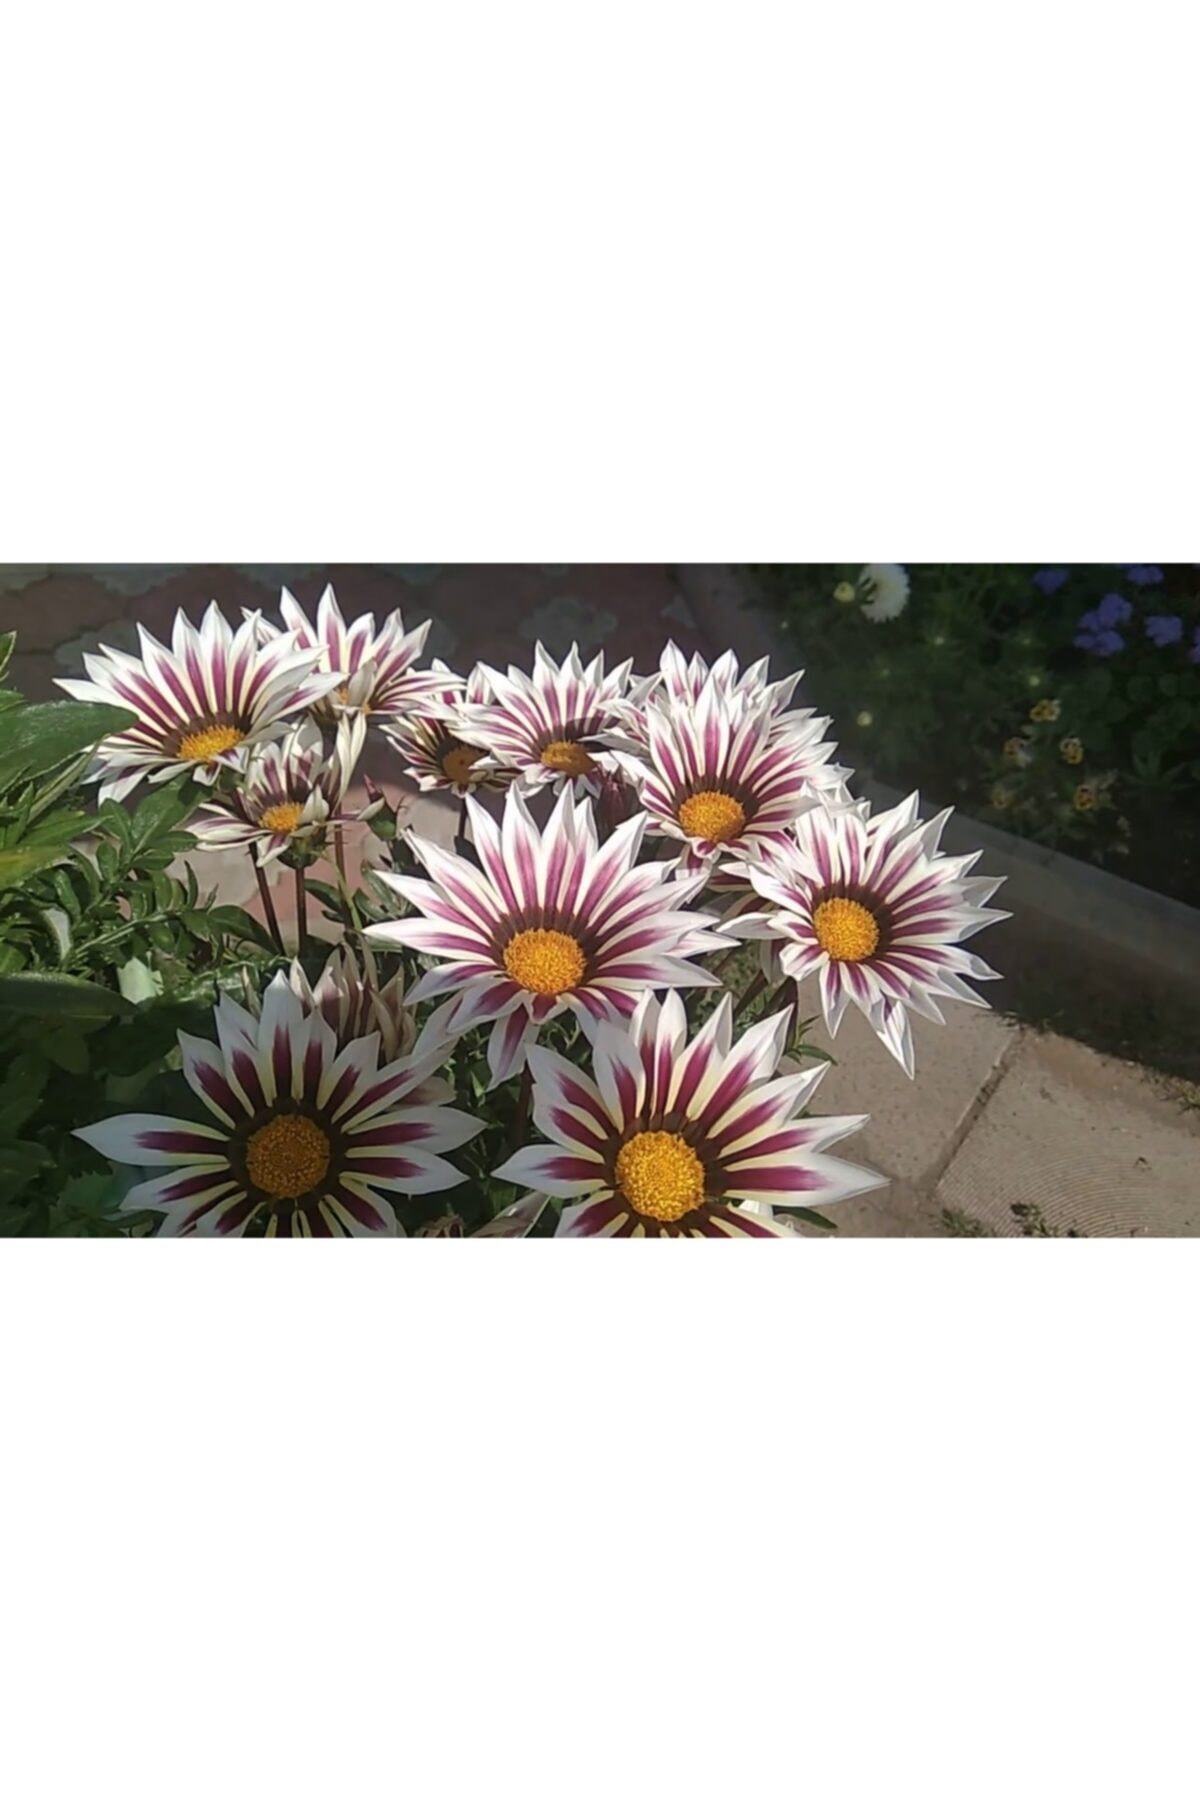 Beyaz Gazanya Çiçeği Fidesi 5Cm-15Cm 30 Adet